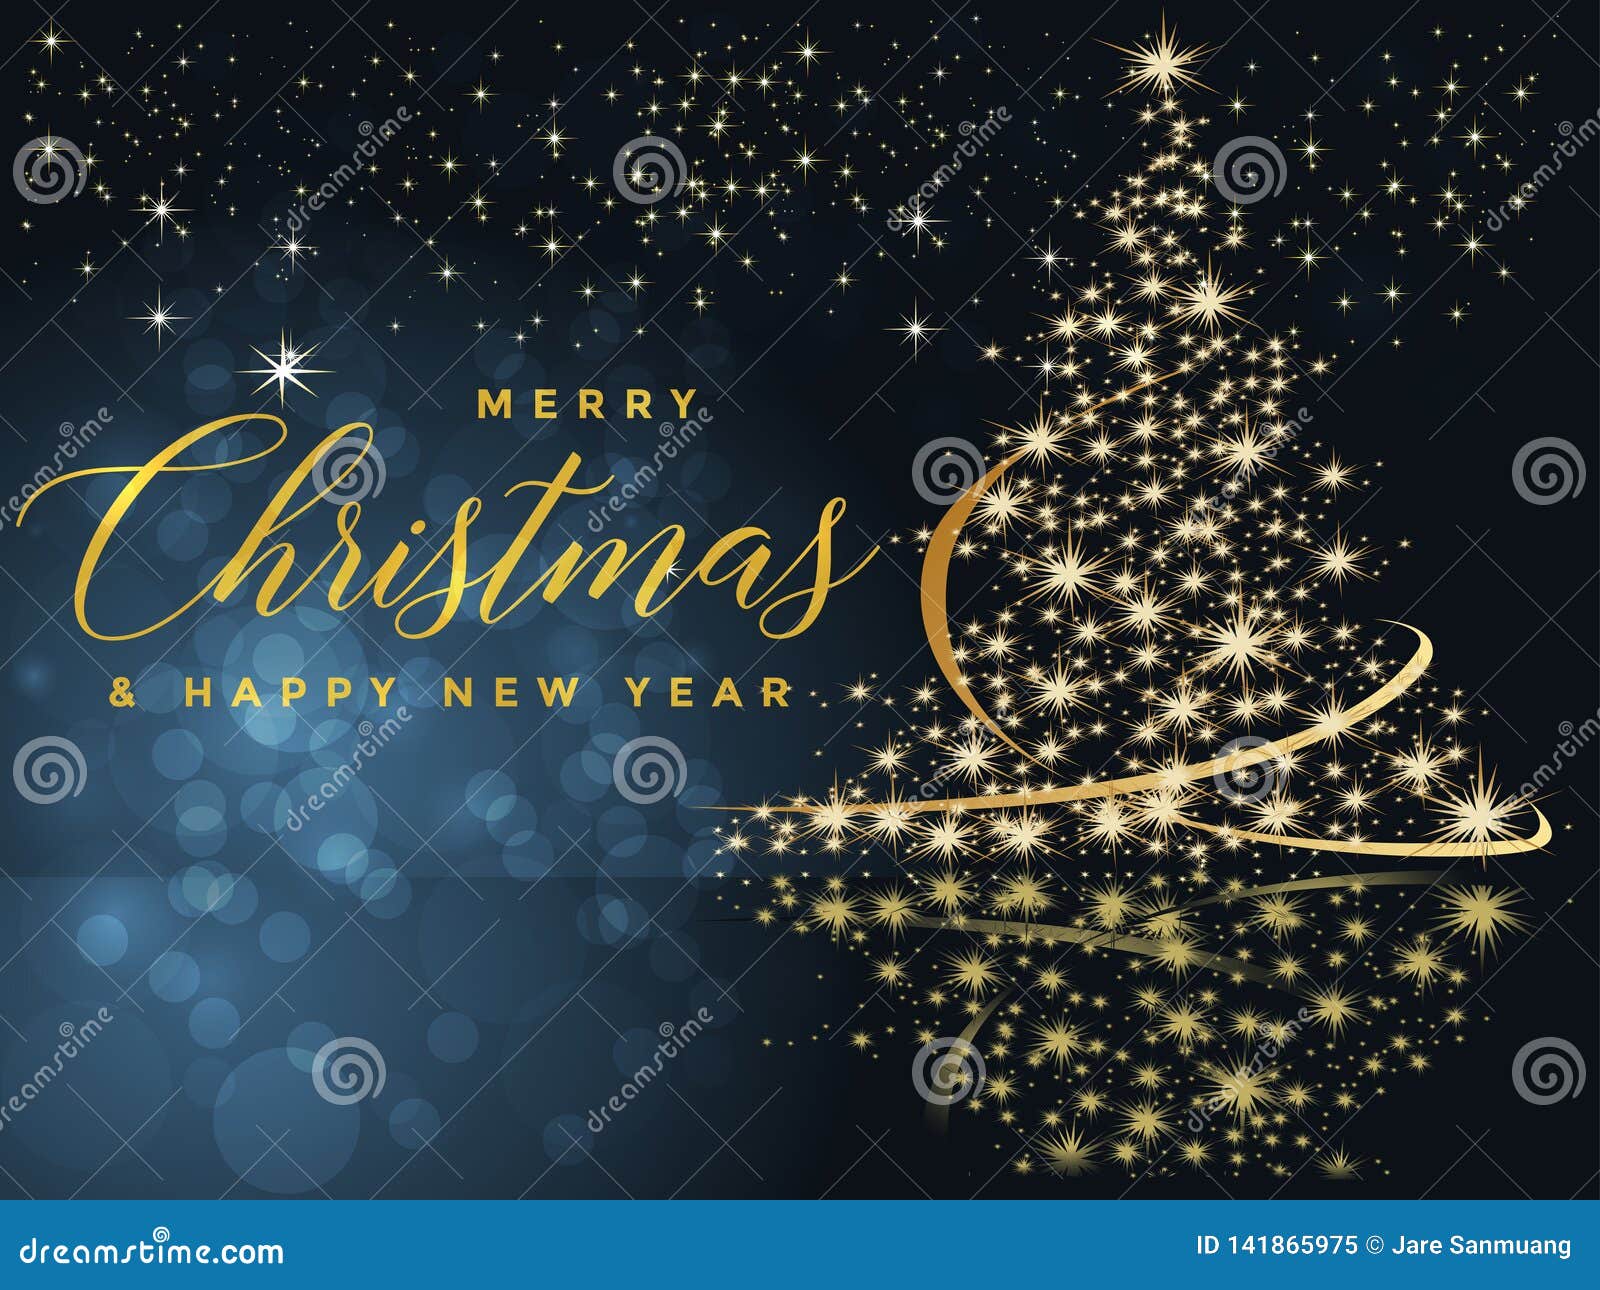 Lễ Giáng Sinh là dịp lễ vui tươi, rộn ràng và nồng ấm. Bạn muốn tìm kiếm một nền đồng hồ tuyết Noel mang lại sự nổi bật và đầy màu sắc? Hãy để chúng tôi giúp bạn với hình ảnh nền đồng hồ tuyết Noel màu xanh lá cây và vàng. Đây chính là lựa chọn hoàn hảo cho không gian giáng sinh của bạn.